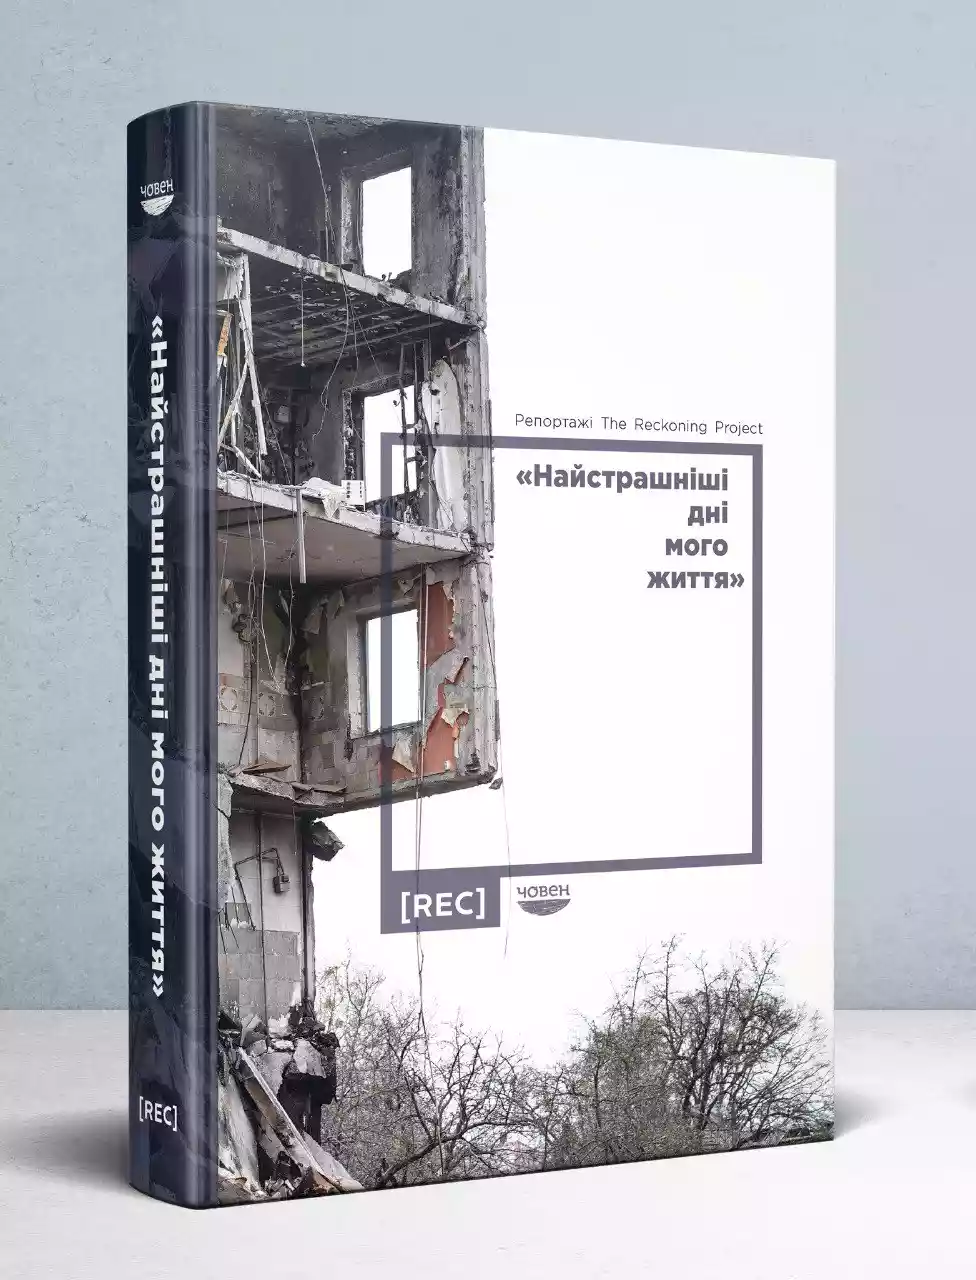 Книга з журналістськими репортажами про резонансні воєнні злочини РФ в Україні готується до друку